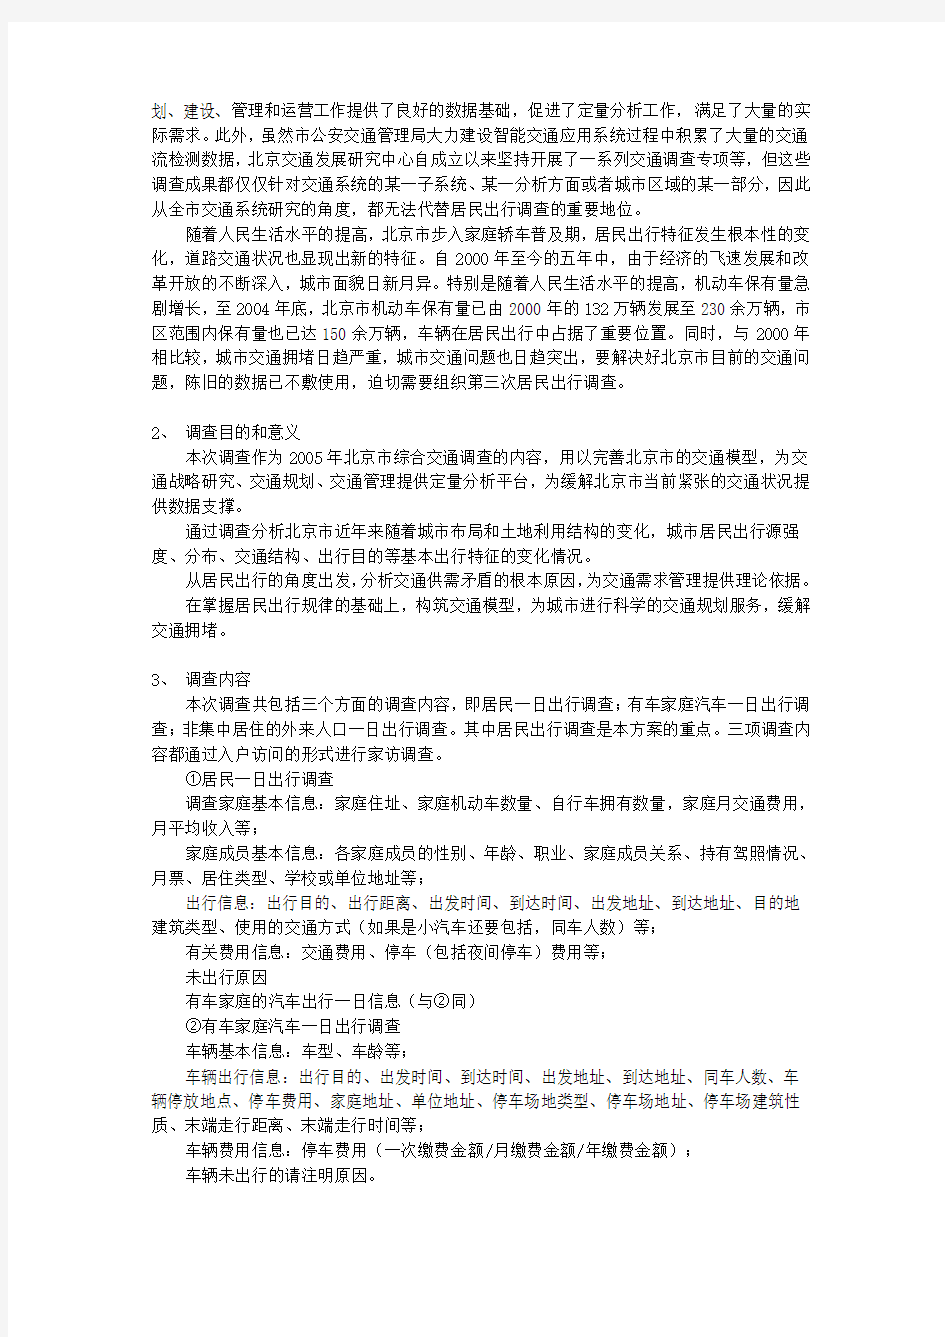 北京市居民出行调查工作及主要结论